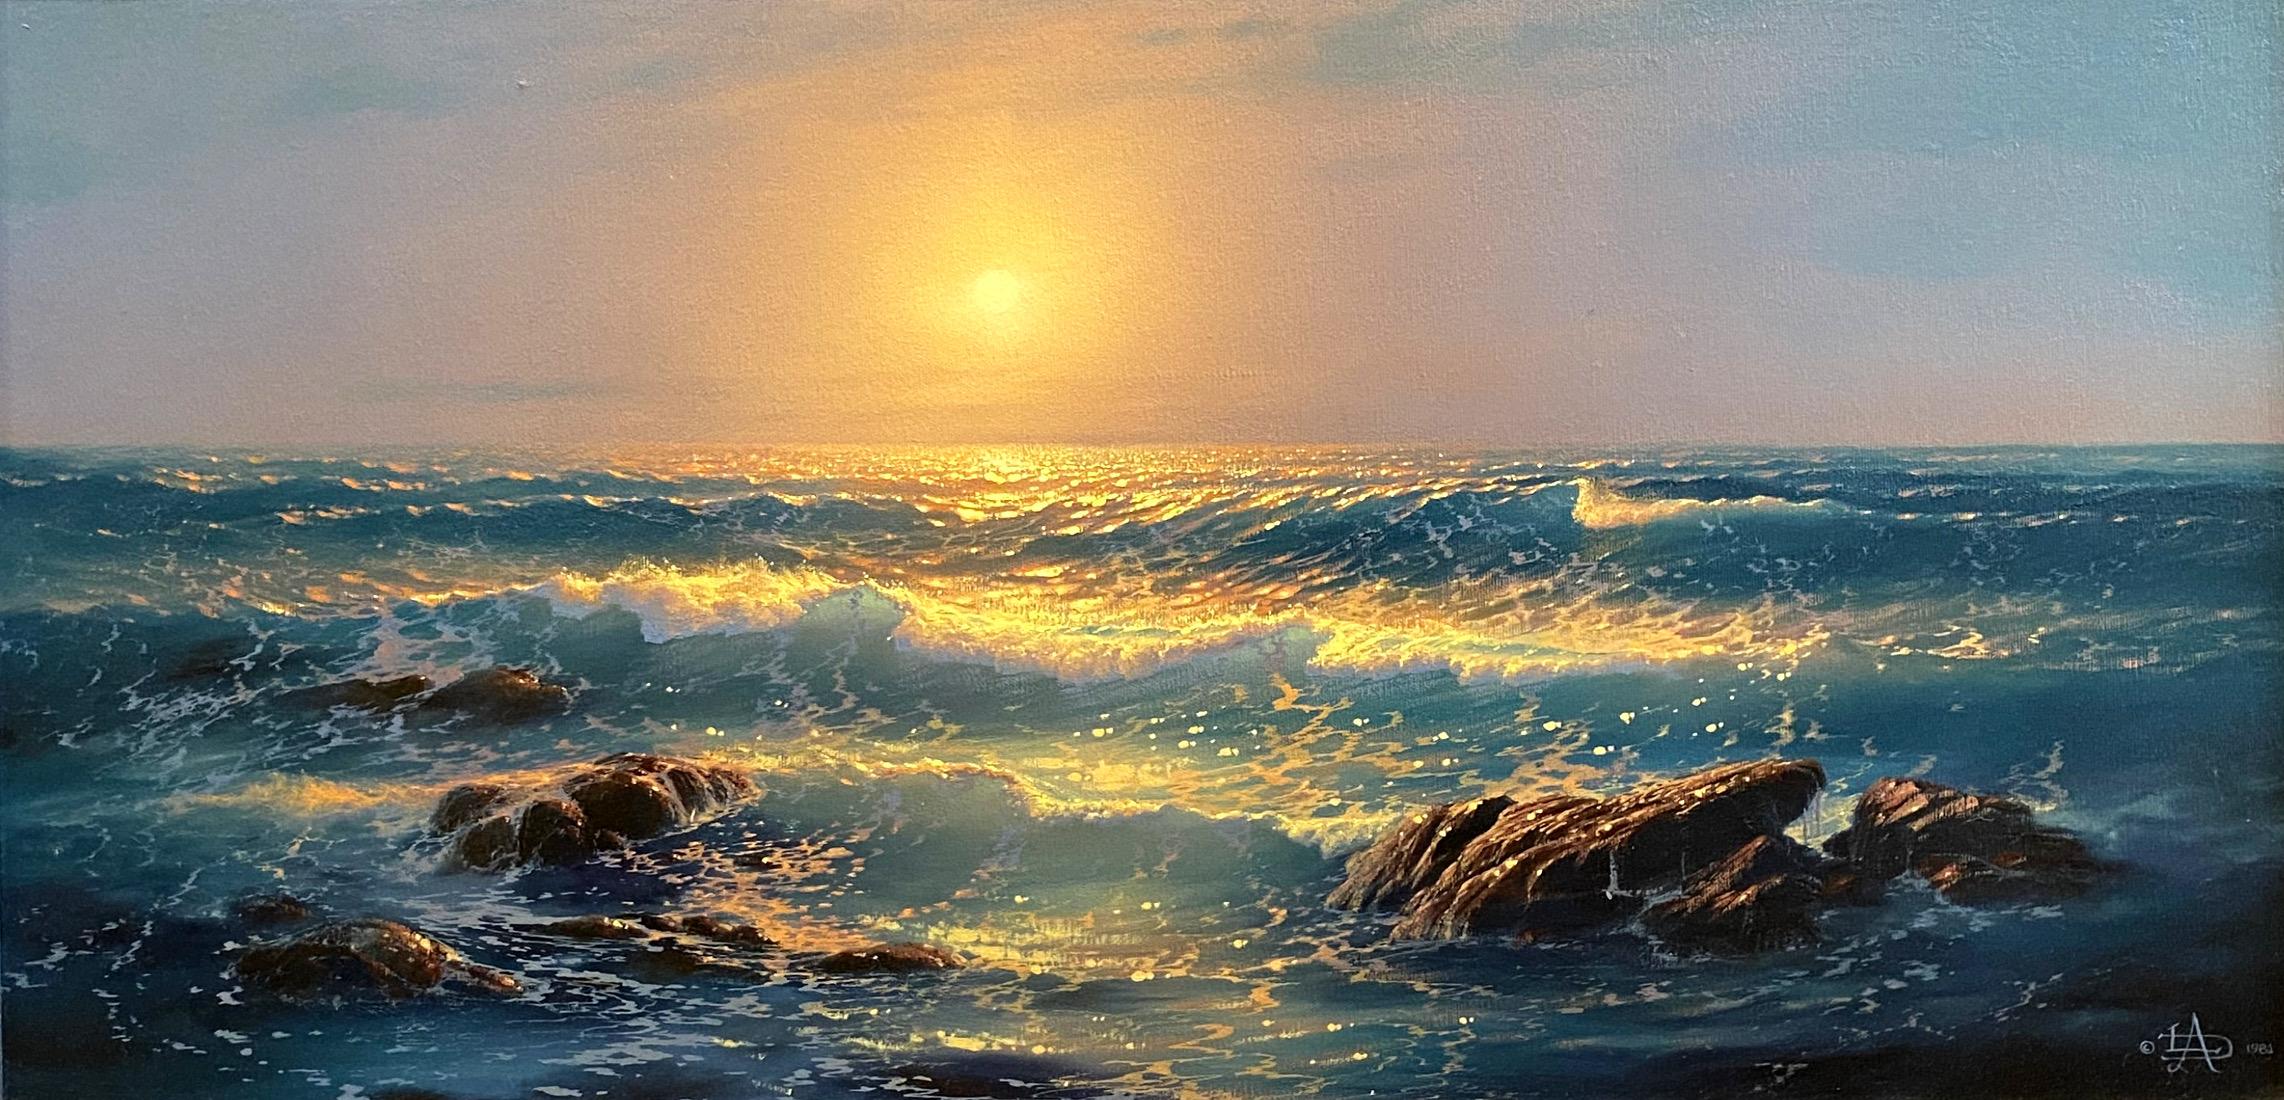 Loren Adams Landscape Painting - "Capriccio In Sea Minor" Seascape Ocean AMAZINGLY BEAUTIFUL Image 12 x 24